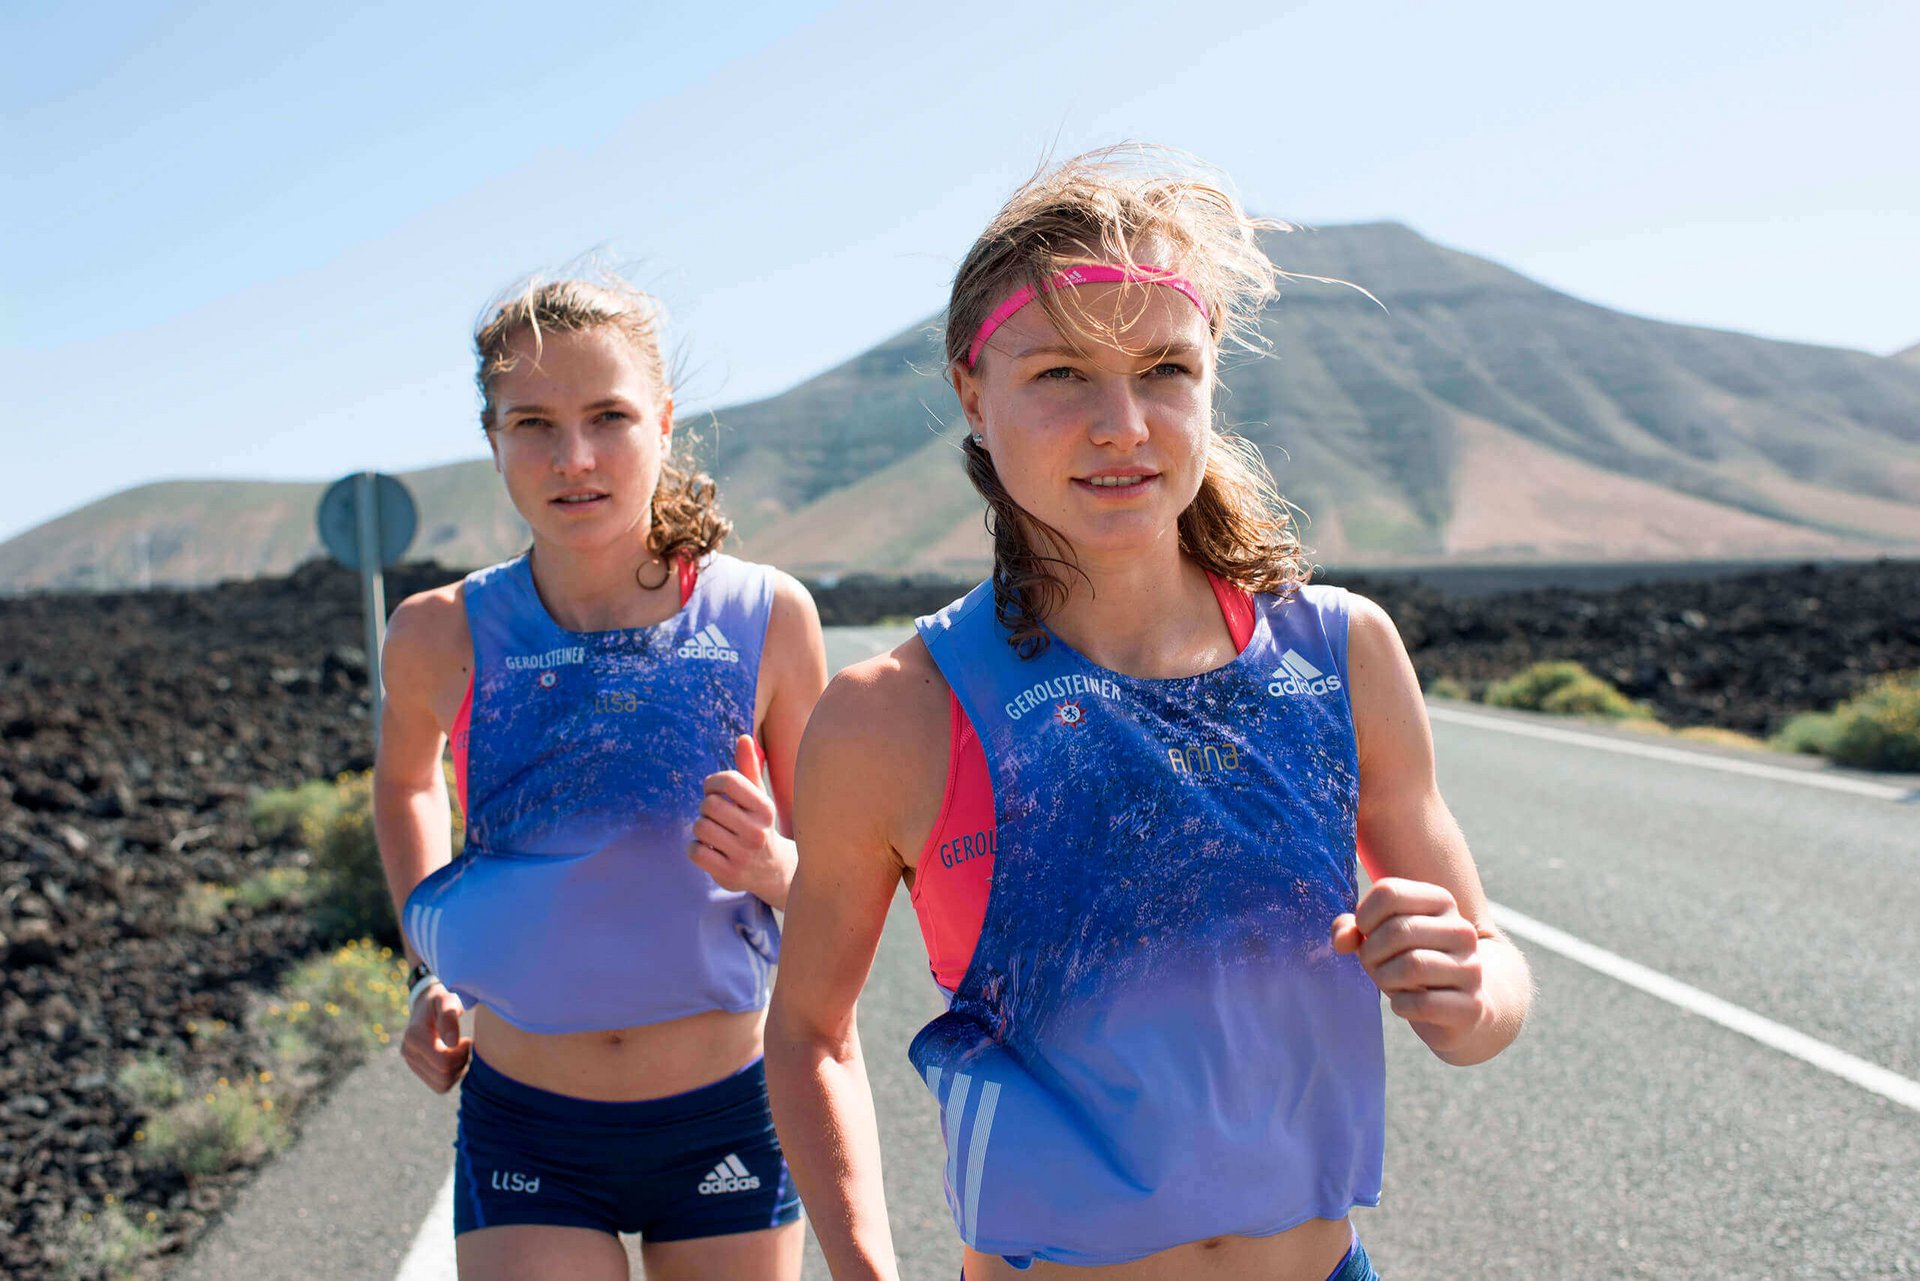 Anna und Lisa Hahner, erfolgreiche Läuferinnen, laufen an einer Straße entlang. Sie sind offizieller Partner von Bauerfeind.